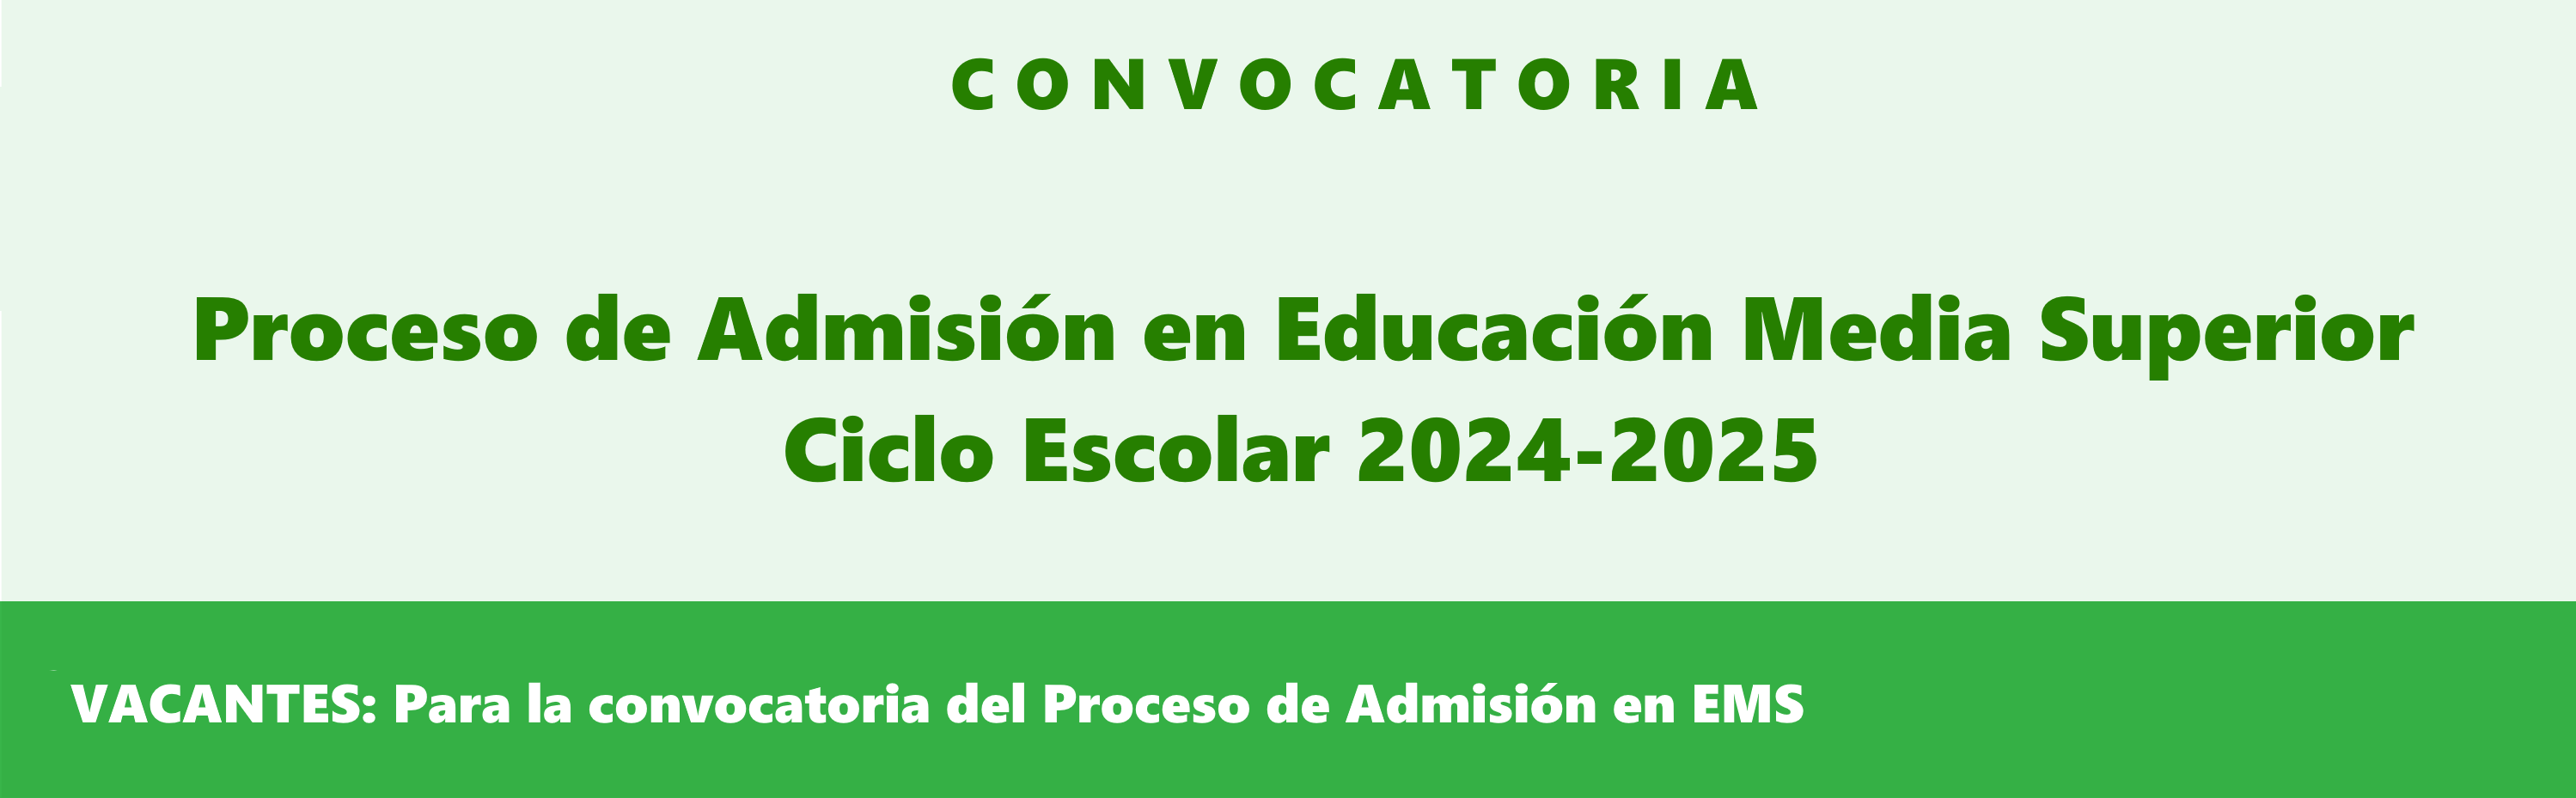 CONVOCATORIA: Proceso de admisión en Educación Media Superior 2024-2025